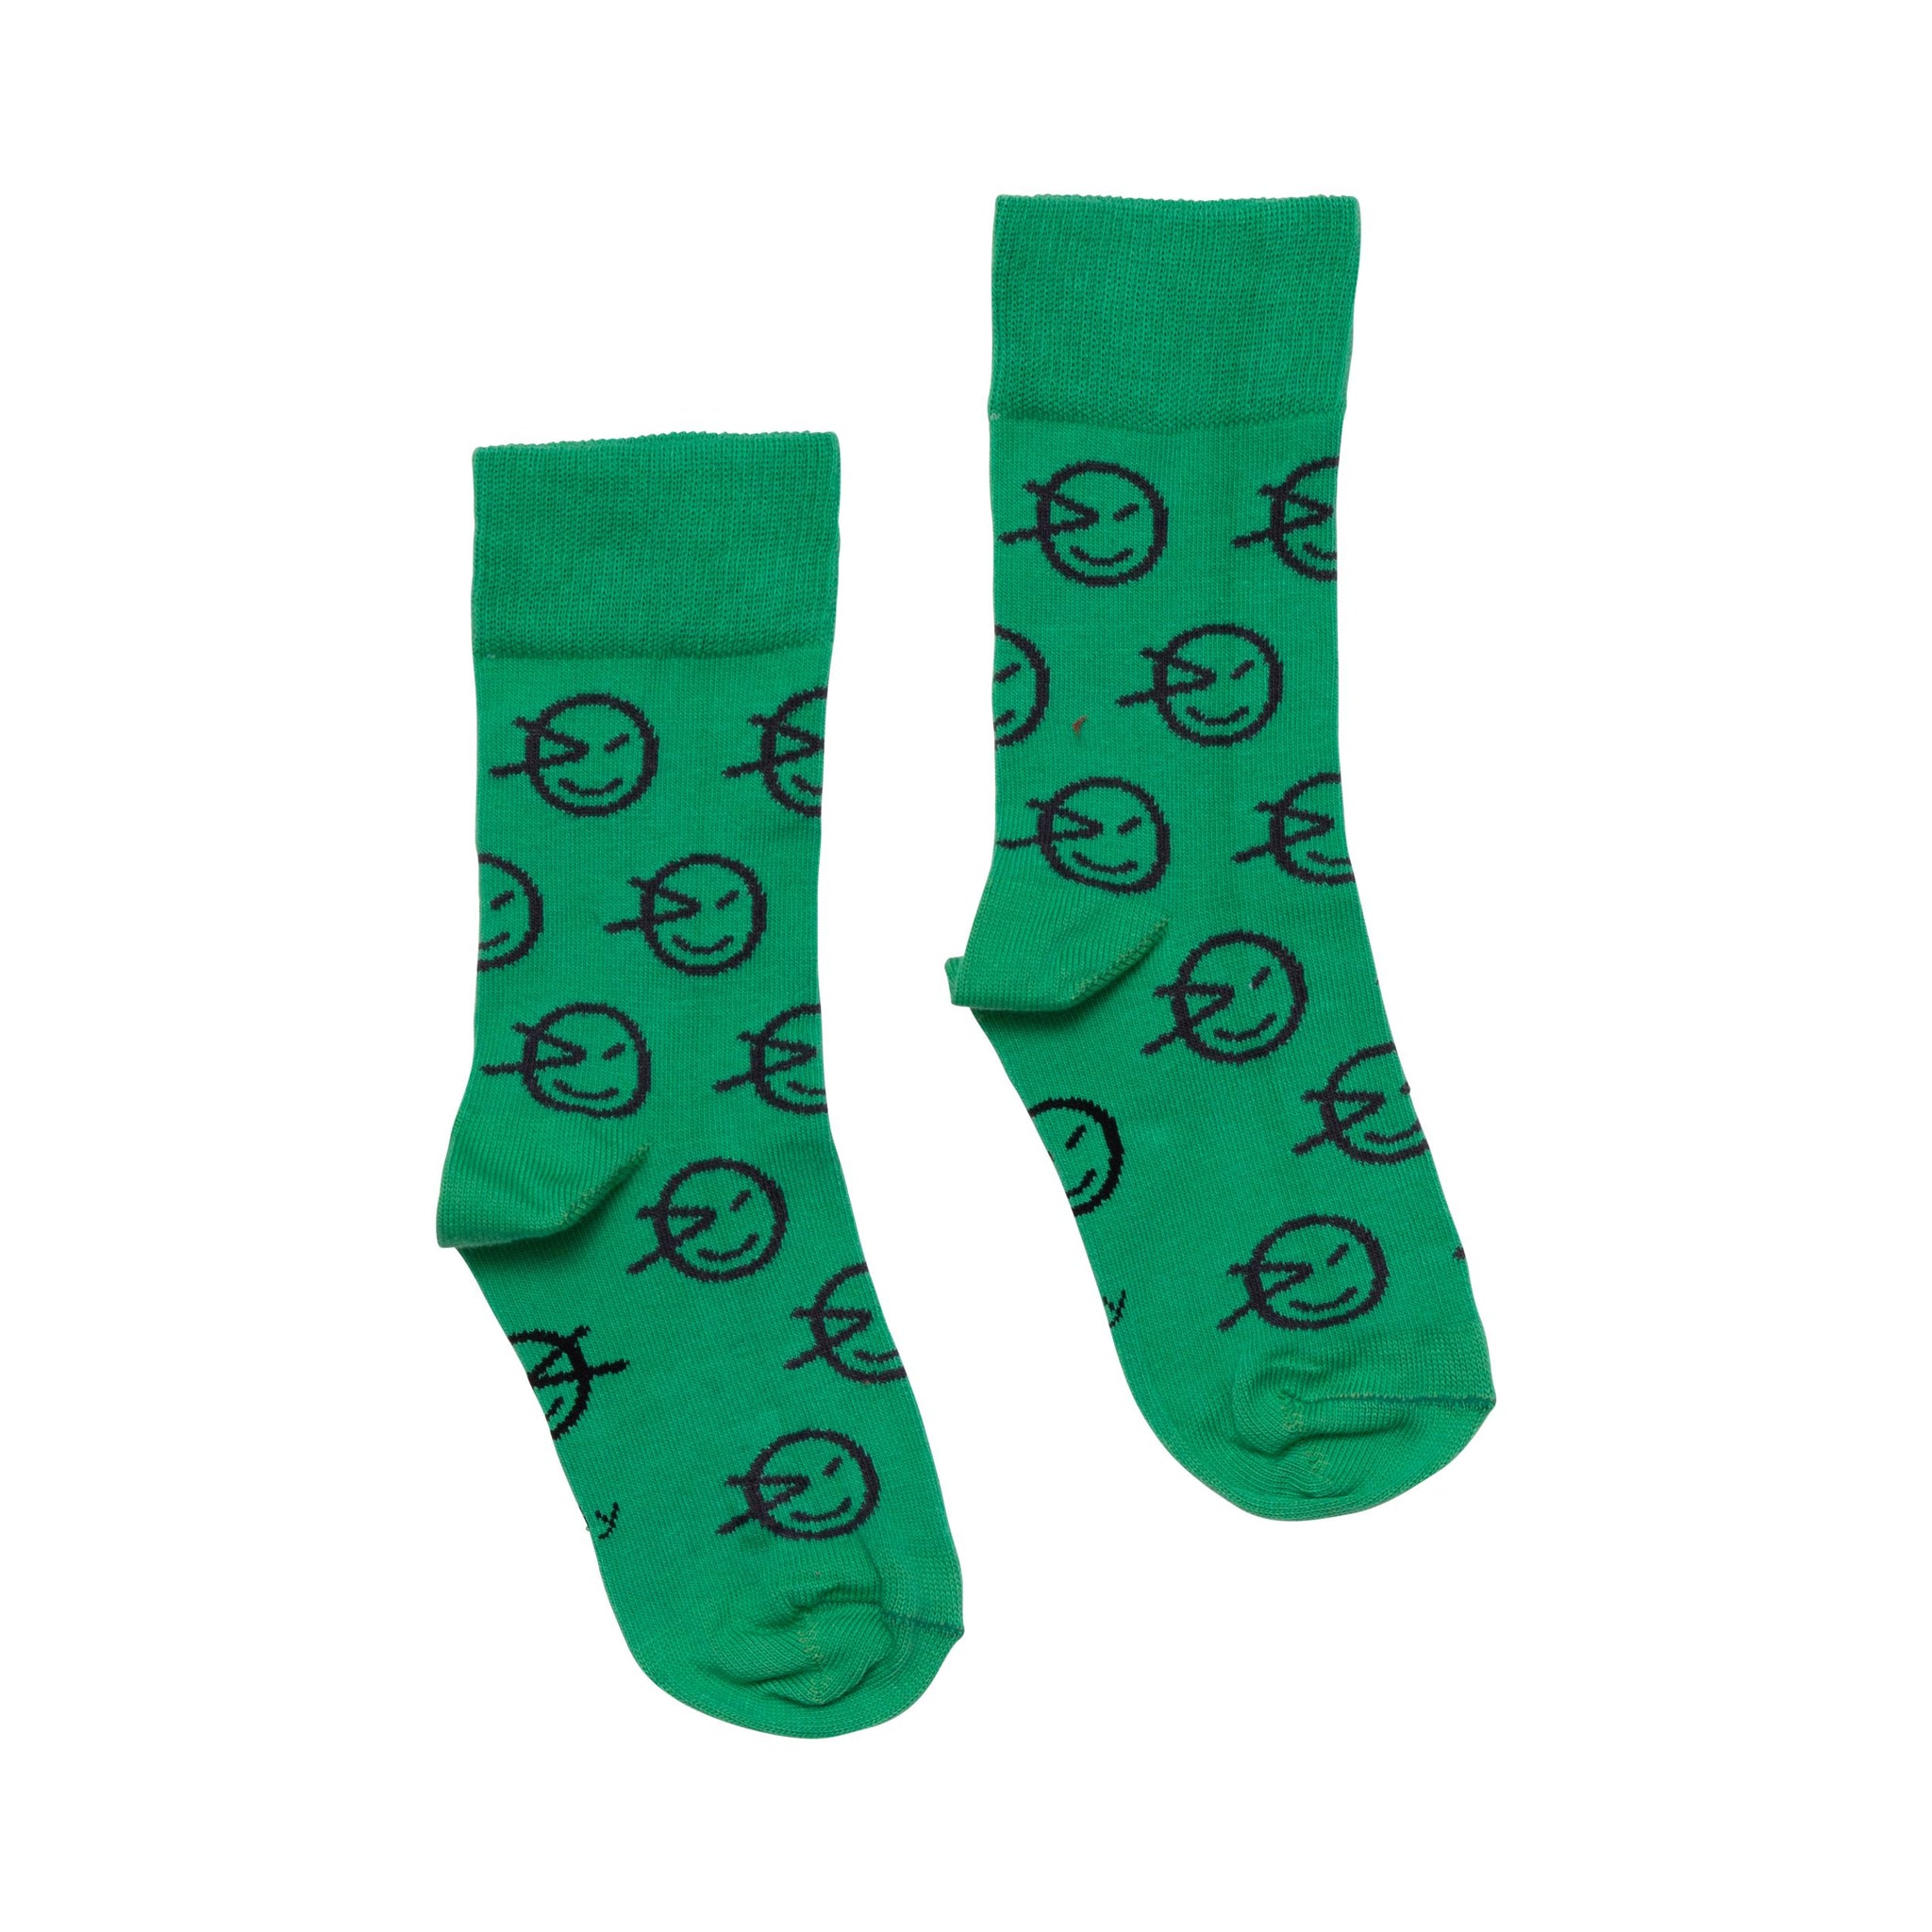 Wynken Multi Ankle Sock - Great Green